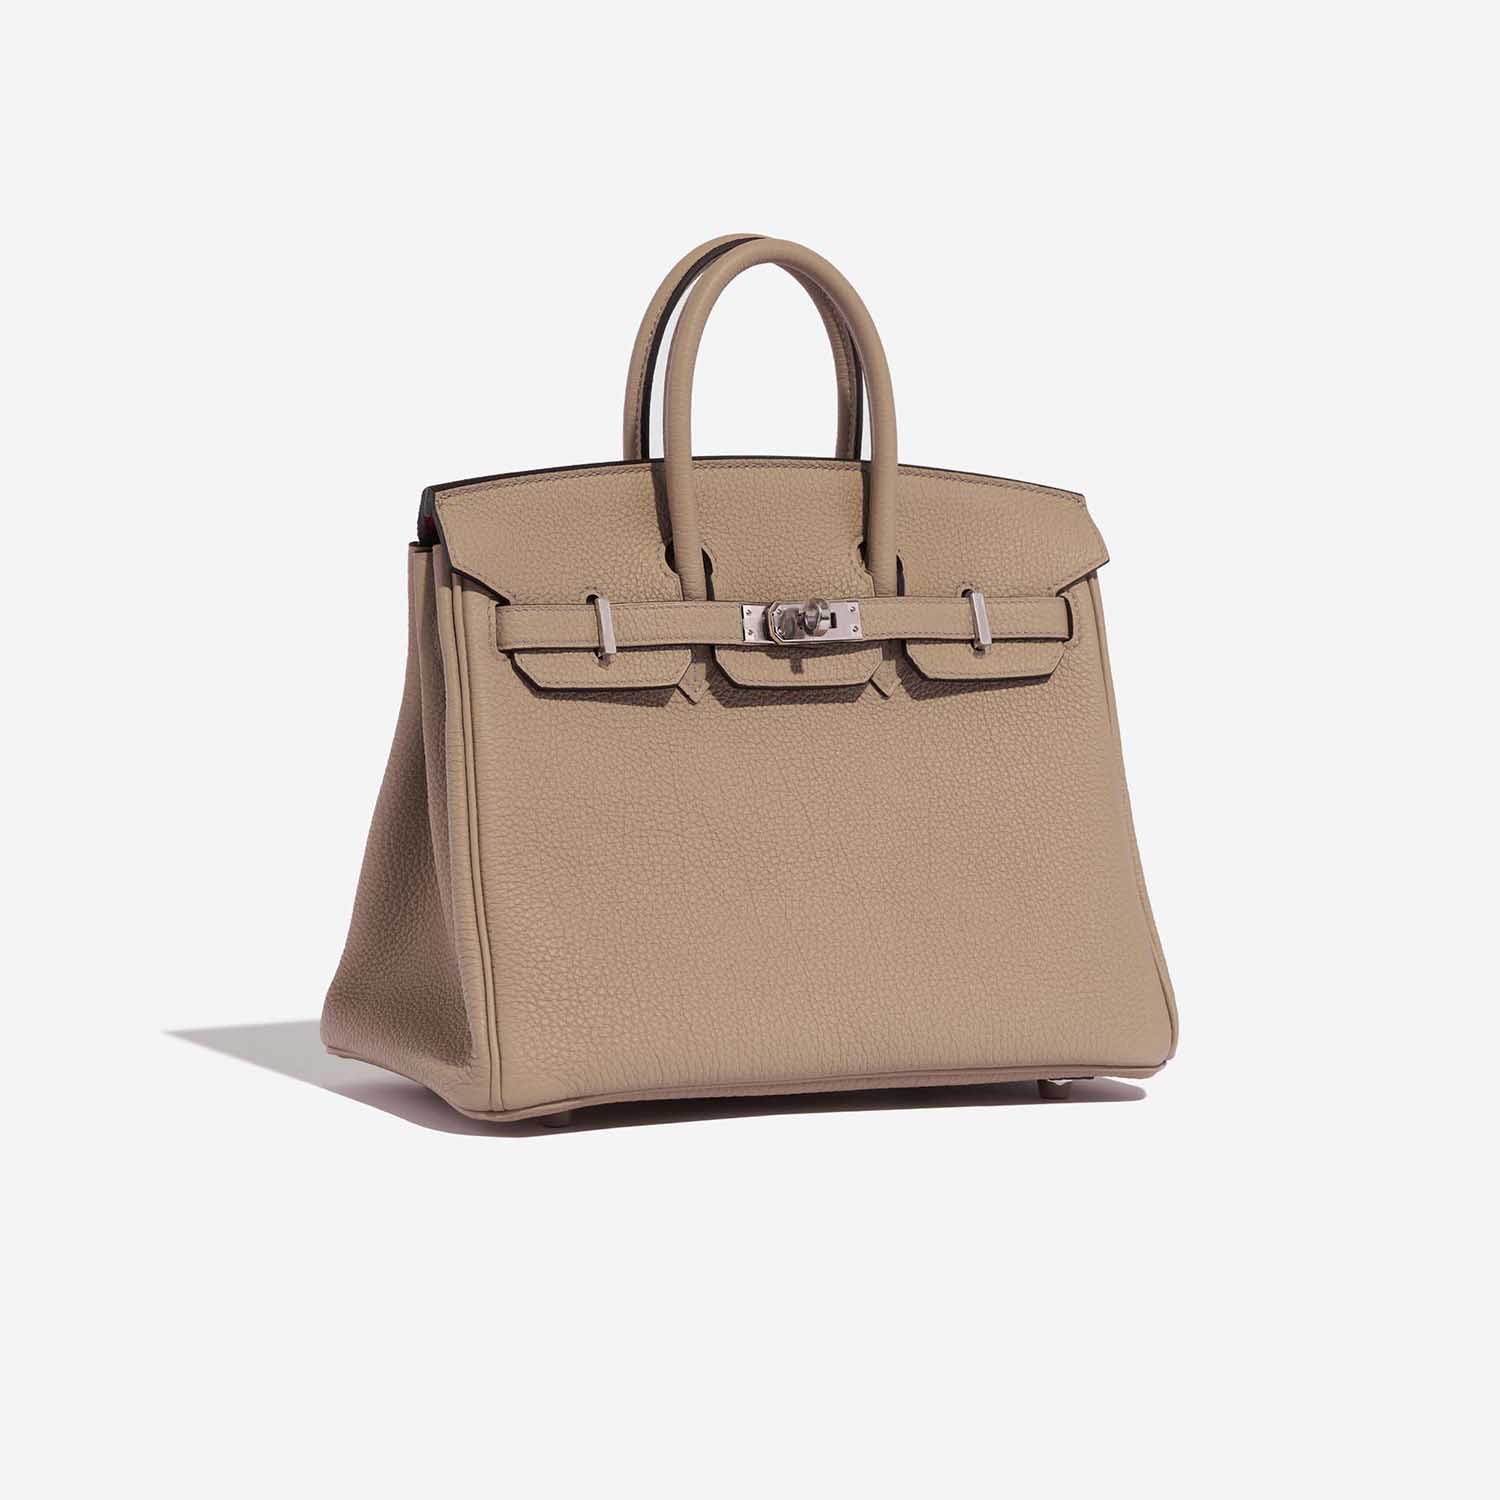 Hermès Birkin 25 Trench-Bougainvillier Side Front | Verkaufen Sie Ihre Designer-Tasche auf Saclab.com